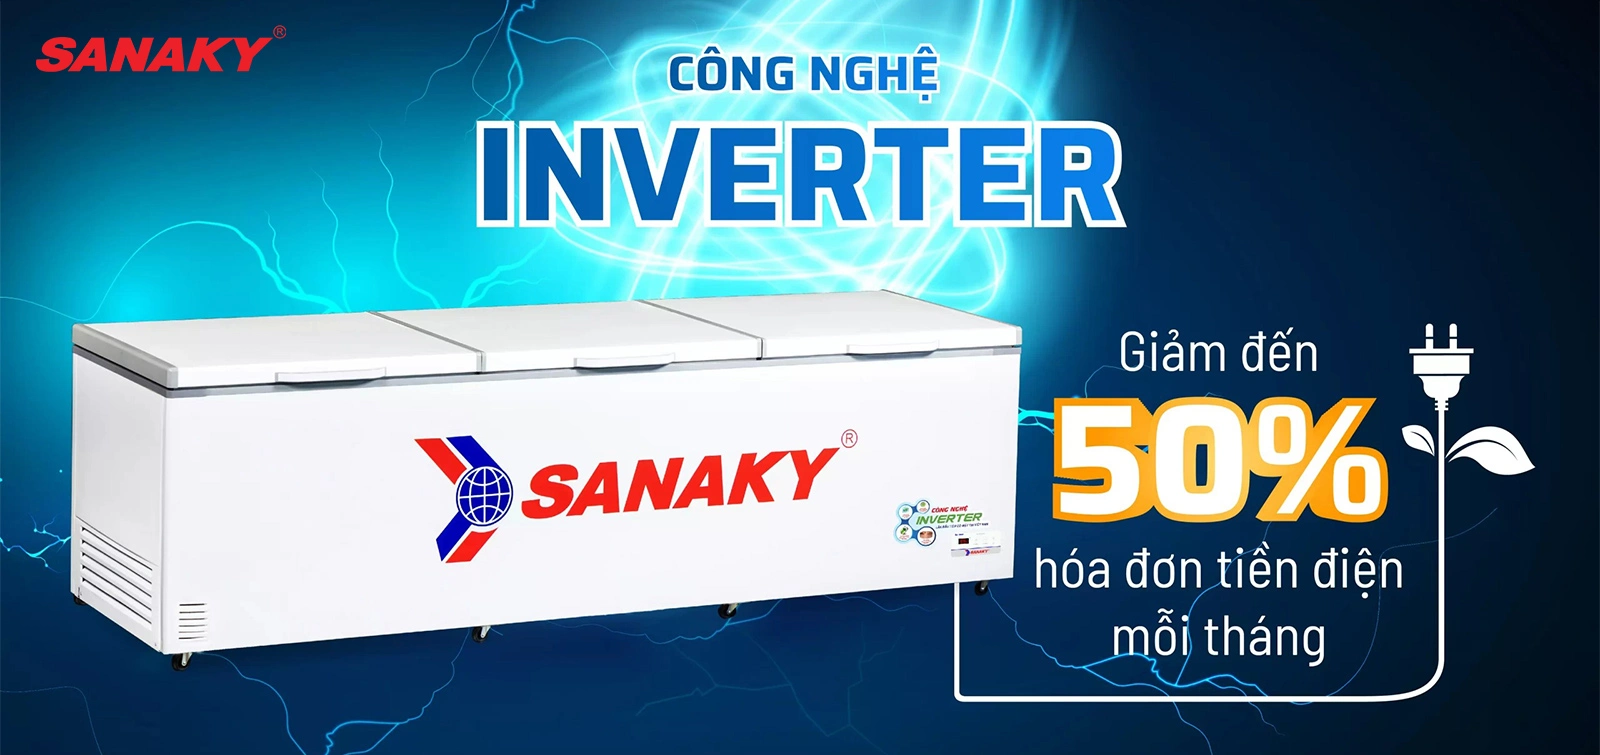 Giảm thiểu 50% hóa đơn điện/tháng với công nghệ Inverter siêu tiết kiệm điện